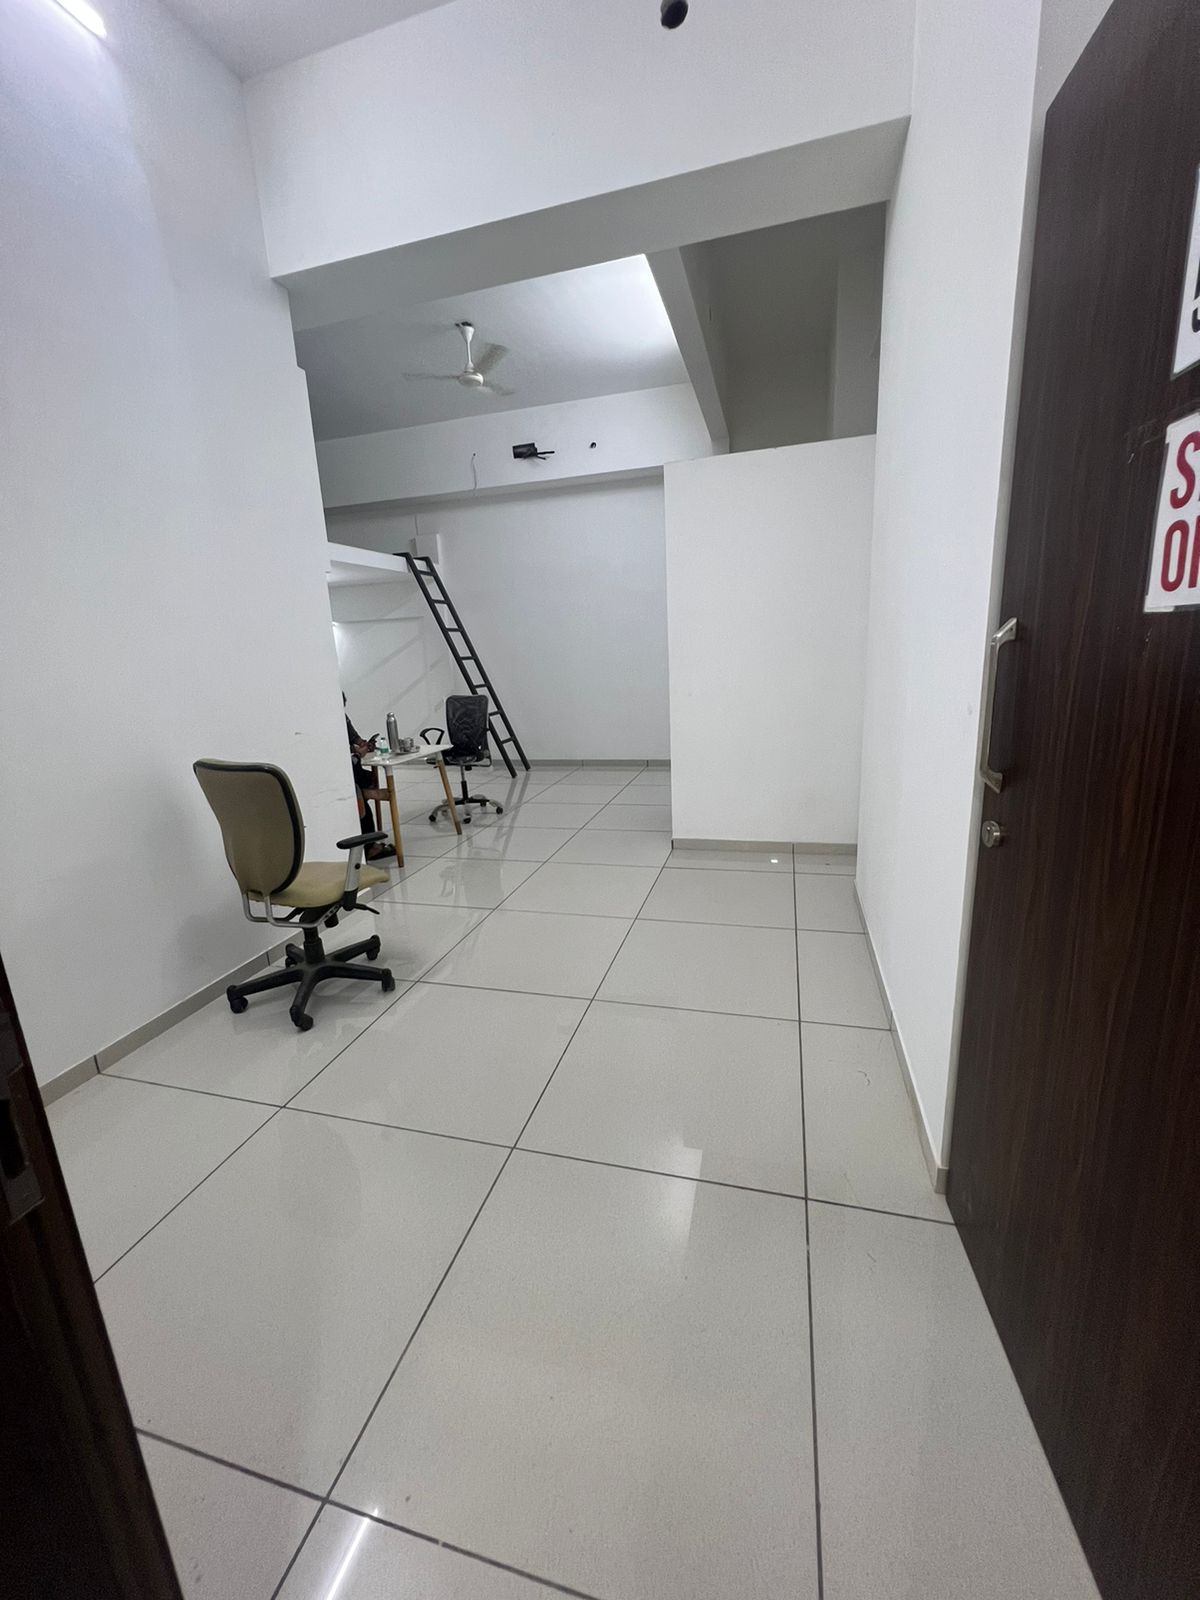 Sell Office/ Shop, 0 sq ft carpet area, UnFurnished for sale @Keytec Park Oshiwara S.V. Road Goregaon West